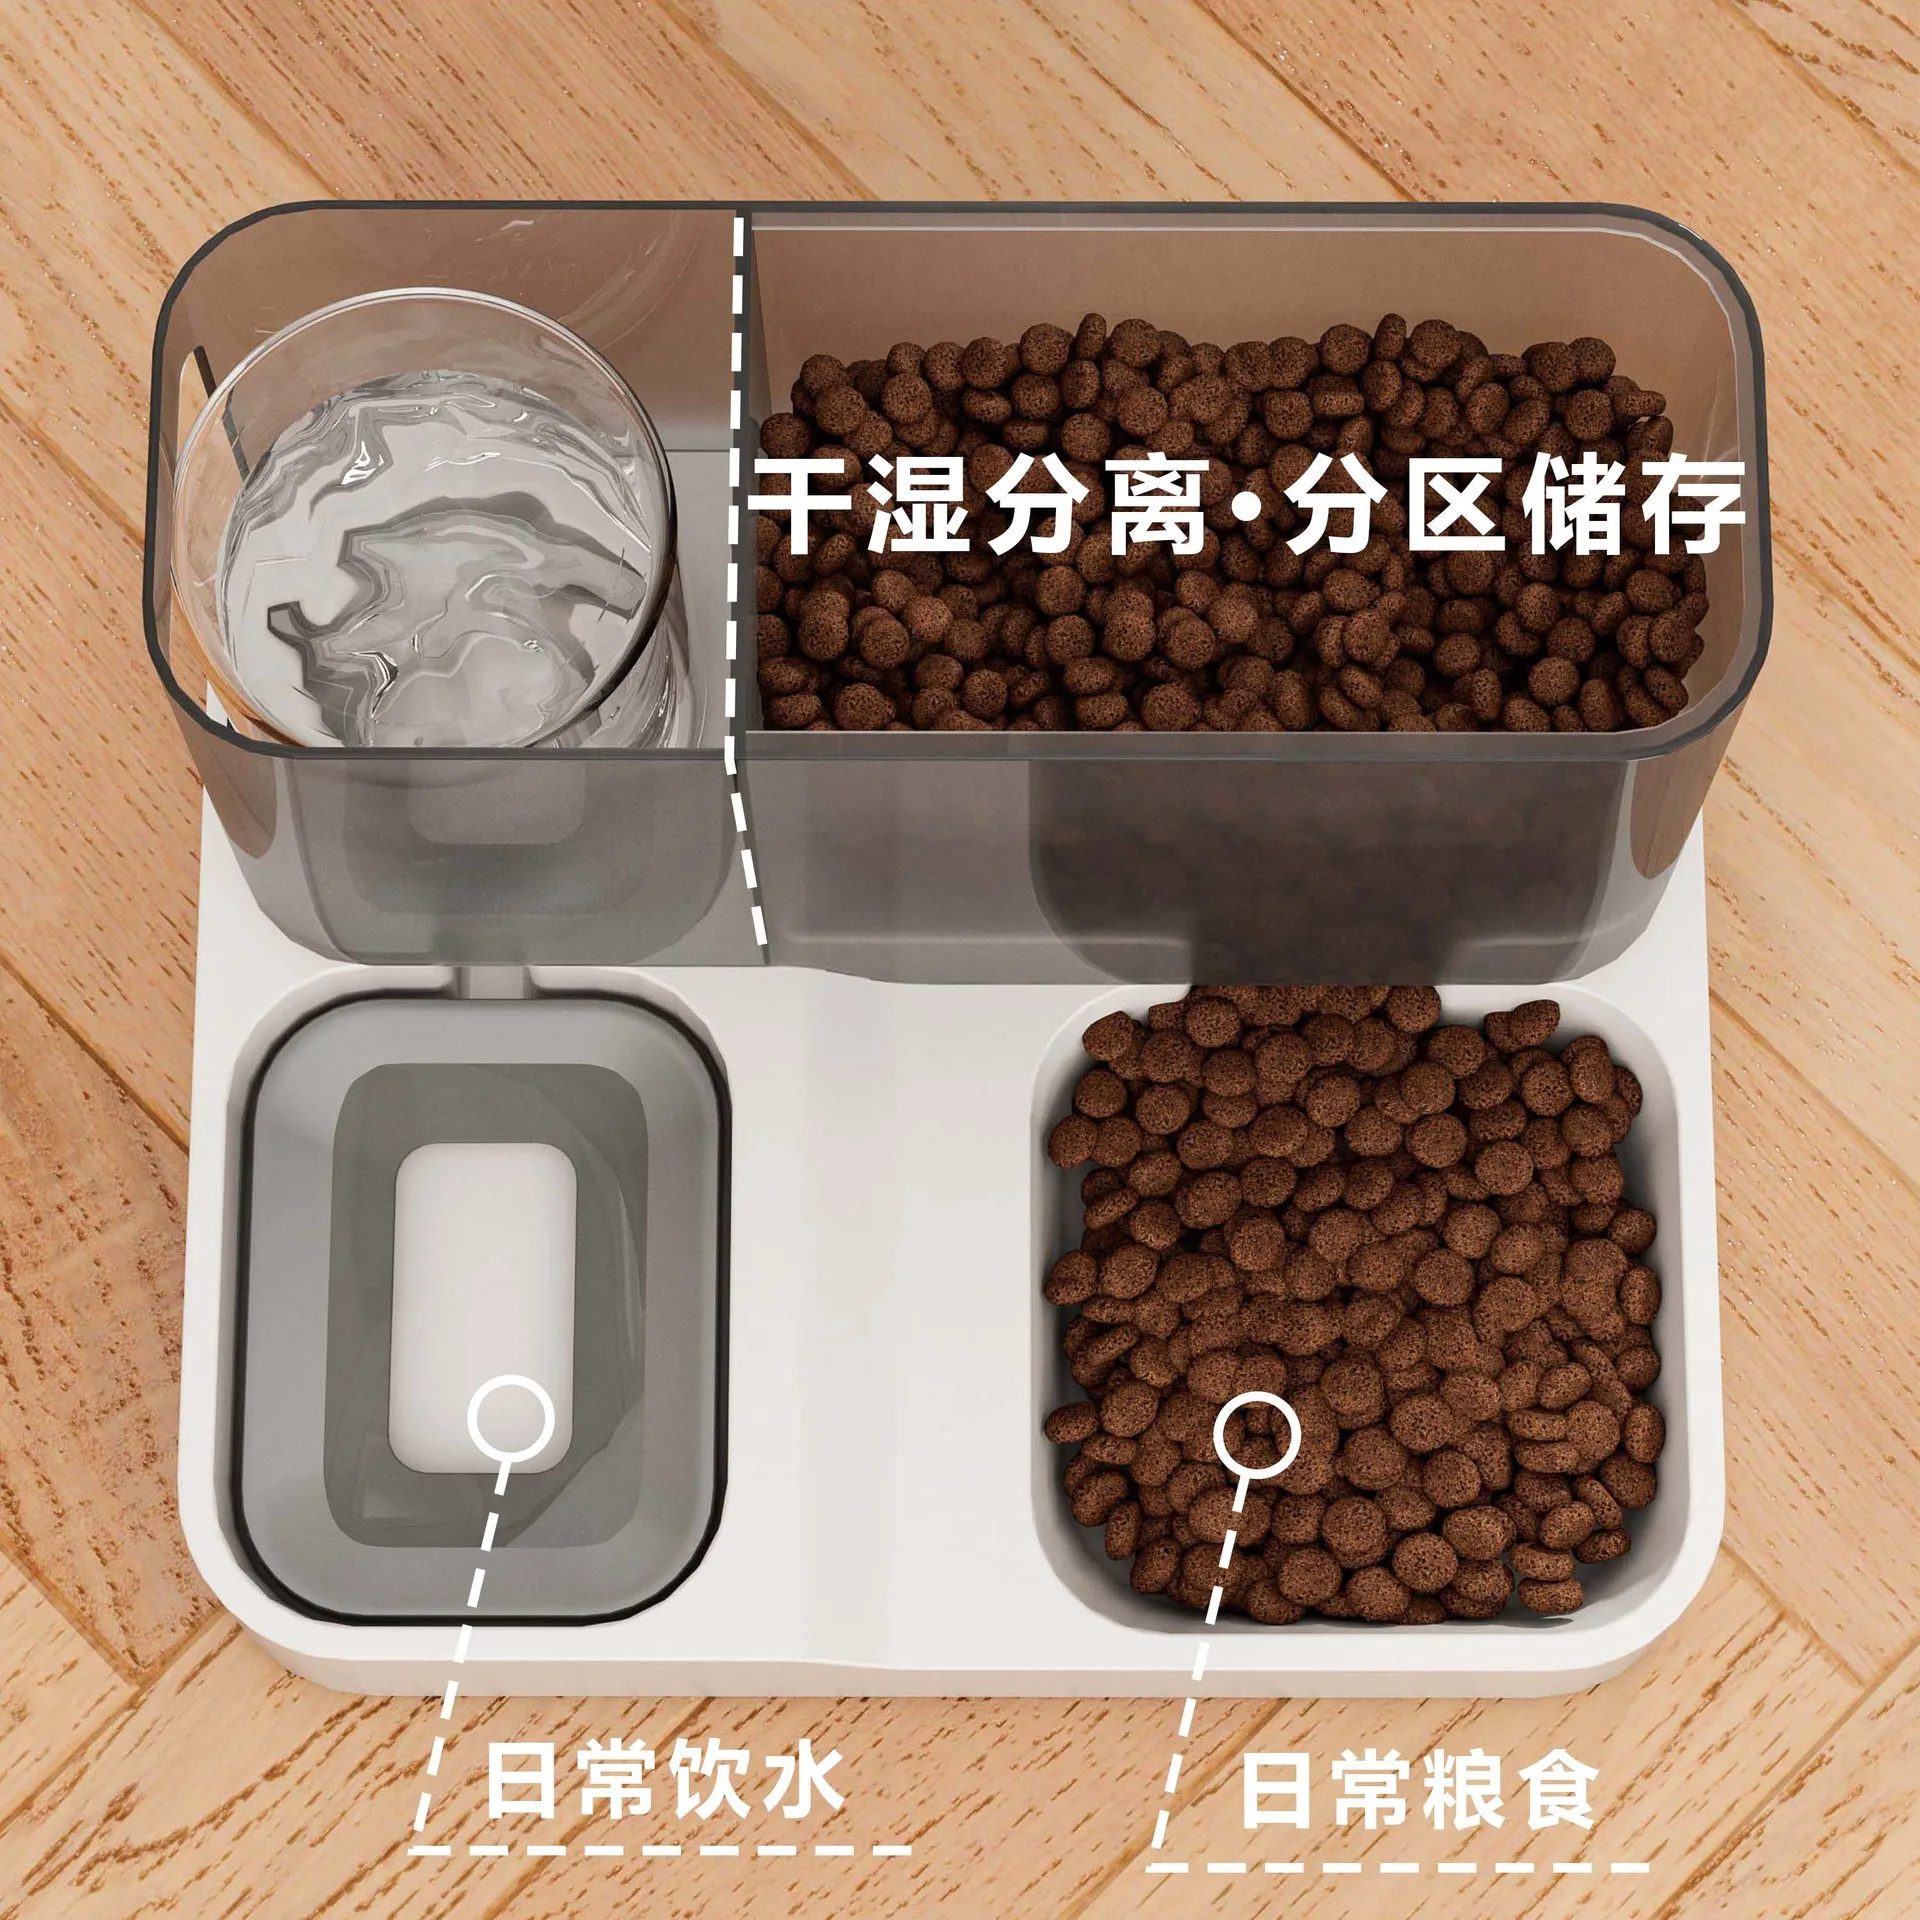 Автоматическая кормушка для кошек, диспенсер для воды, миска для кошек большой емкости, универсальная проточная вода без мокрого рта 1